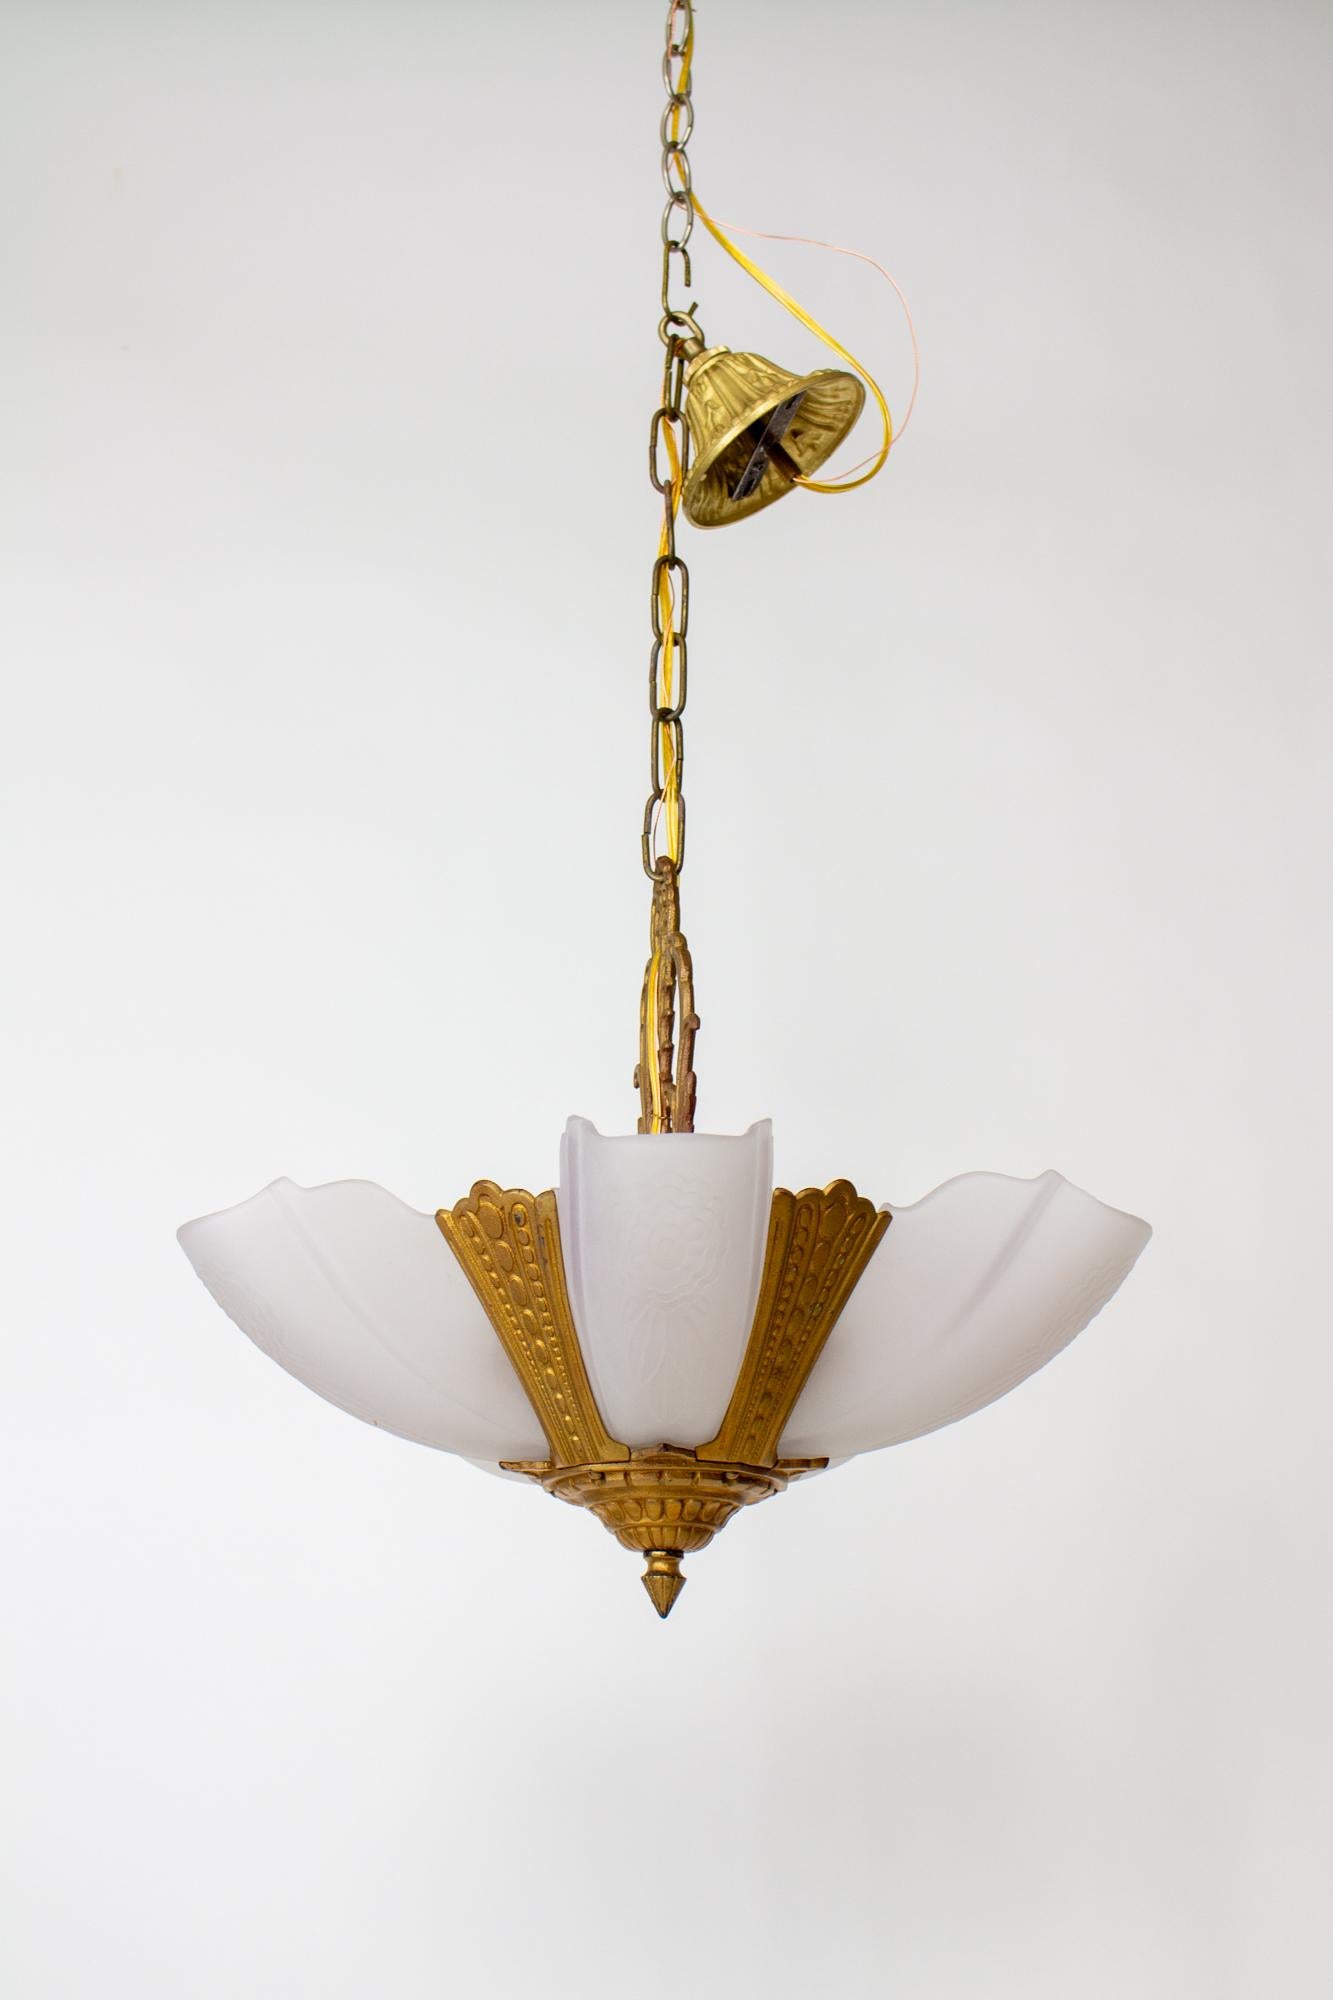 Eine authentische 1930's Gold Art Deco Slip Shade Kronleuchter. Dieser Kronleuchter verkörpert das Wesen des Art Déco, das sich durch seine klaren Linien, geometrischen Formen und einfachen Ausführungen auszeichnet. Der gusseiserne Korpus dieses